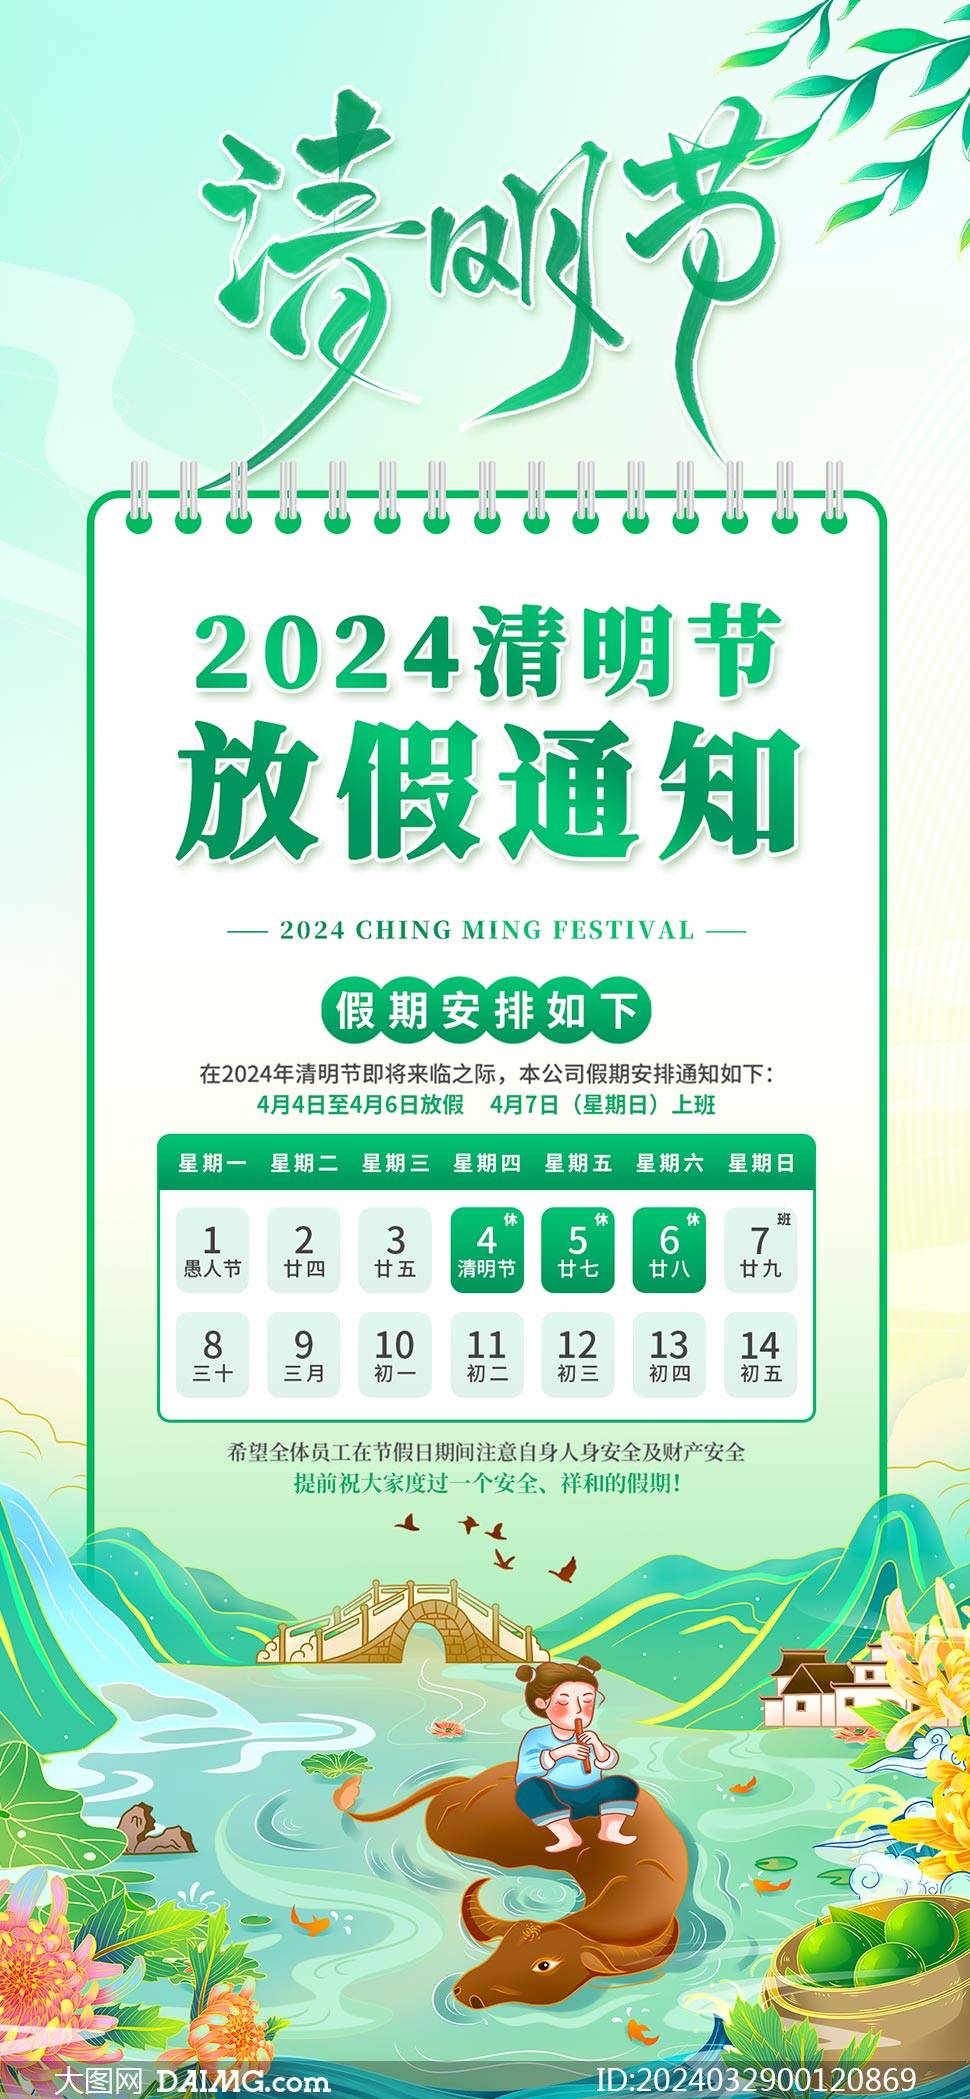 2024年清明节放假通知海报模板